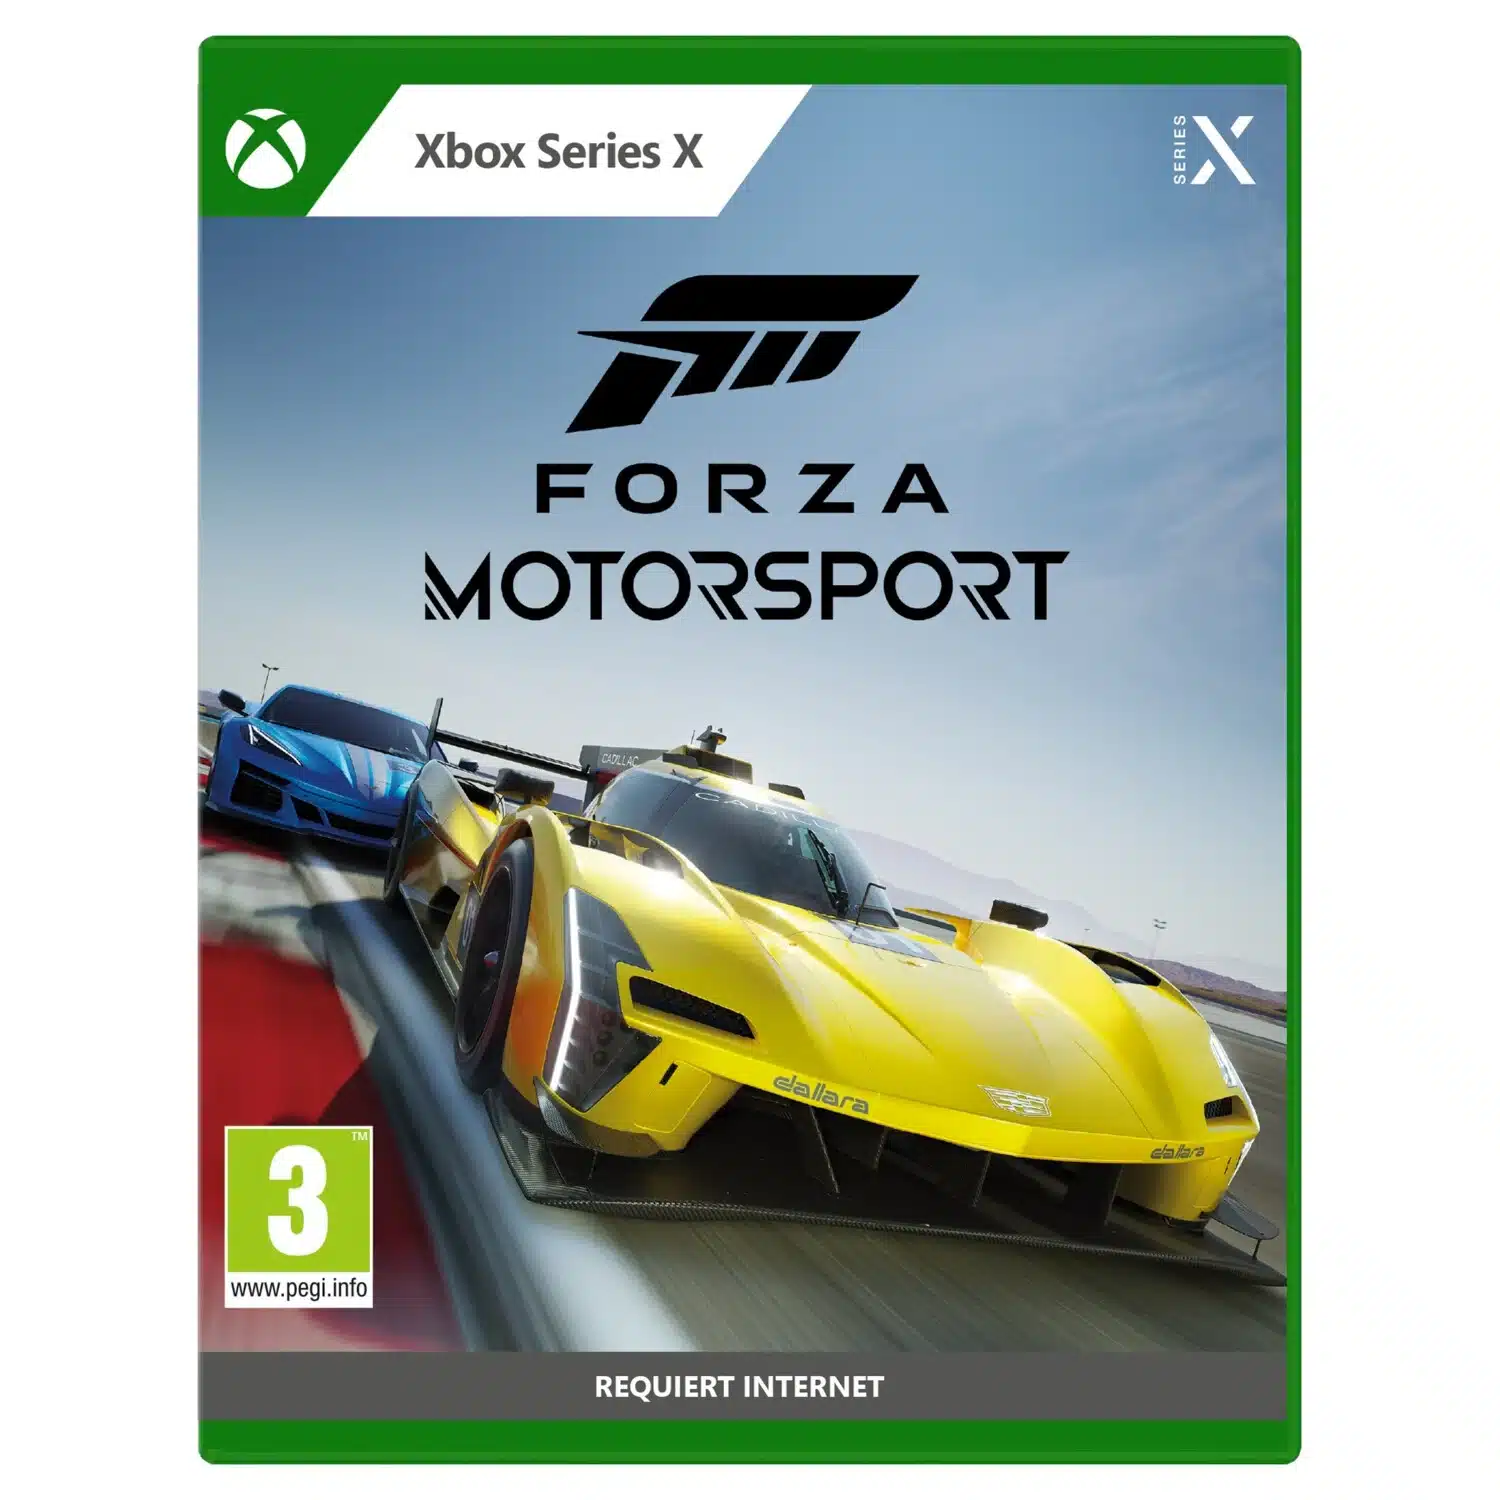 Forza Motorsport disponible sur Xbox Series X|S, PC Windows, Steam et le Xbox Game Pass, notre test !